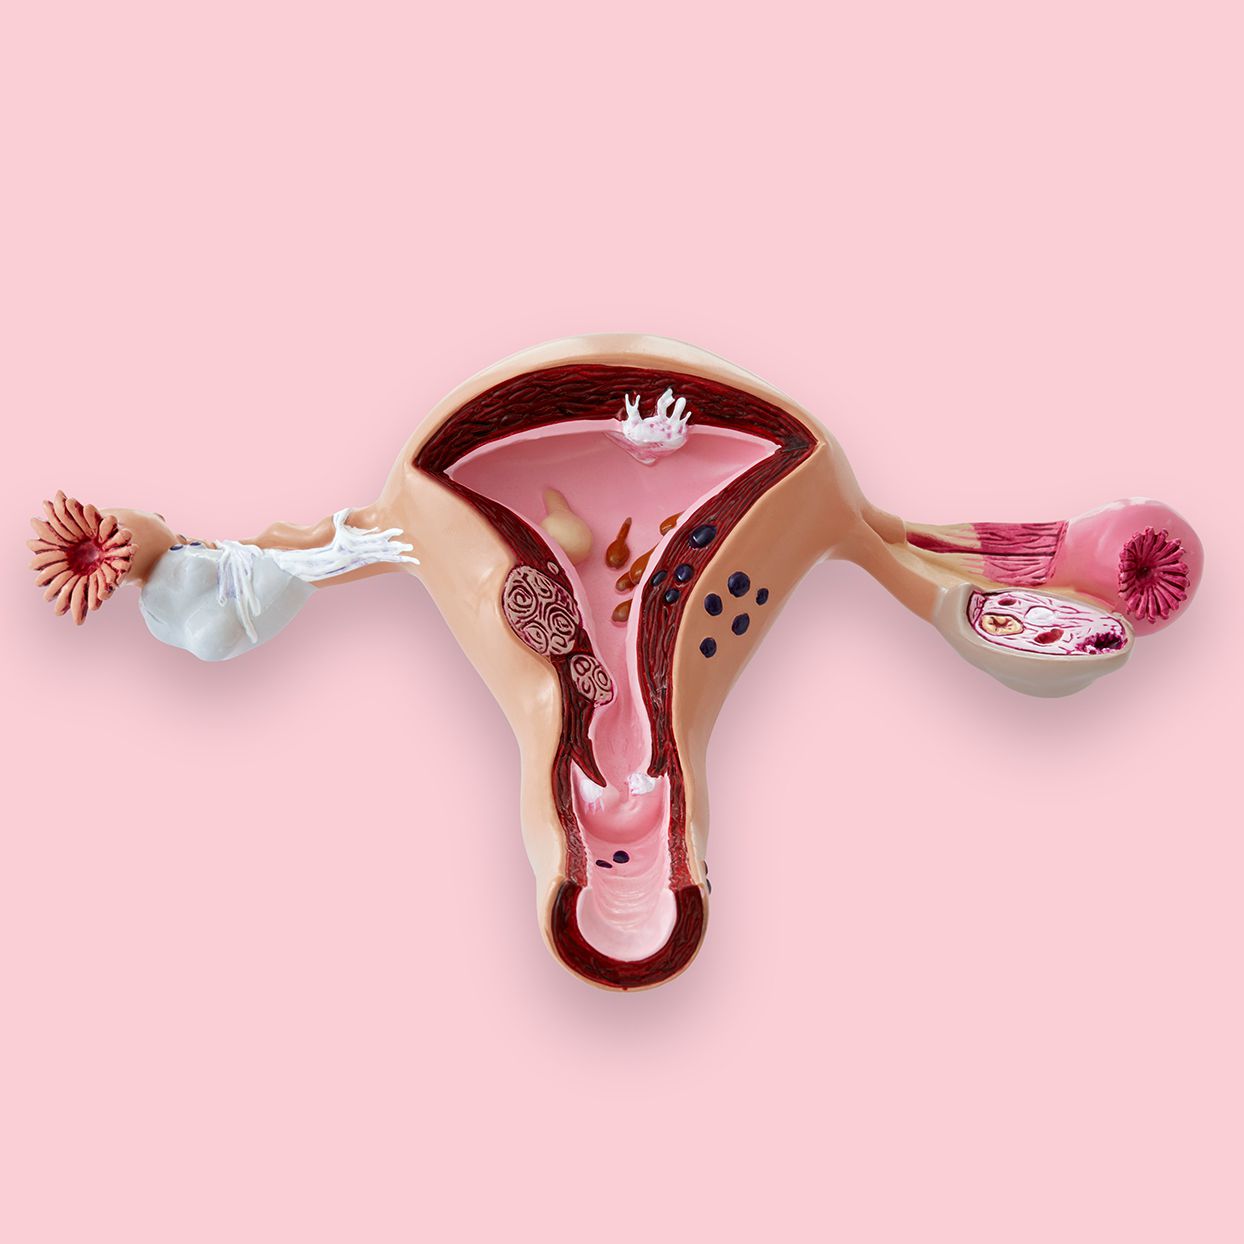 Model of a uterus